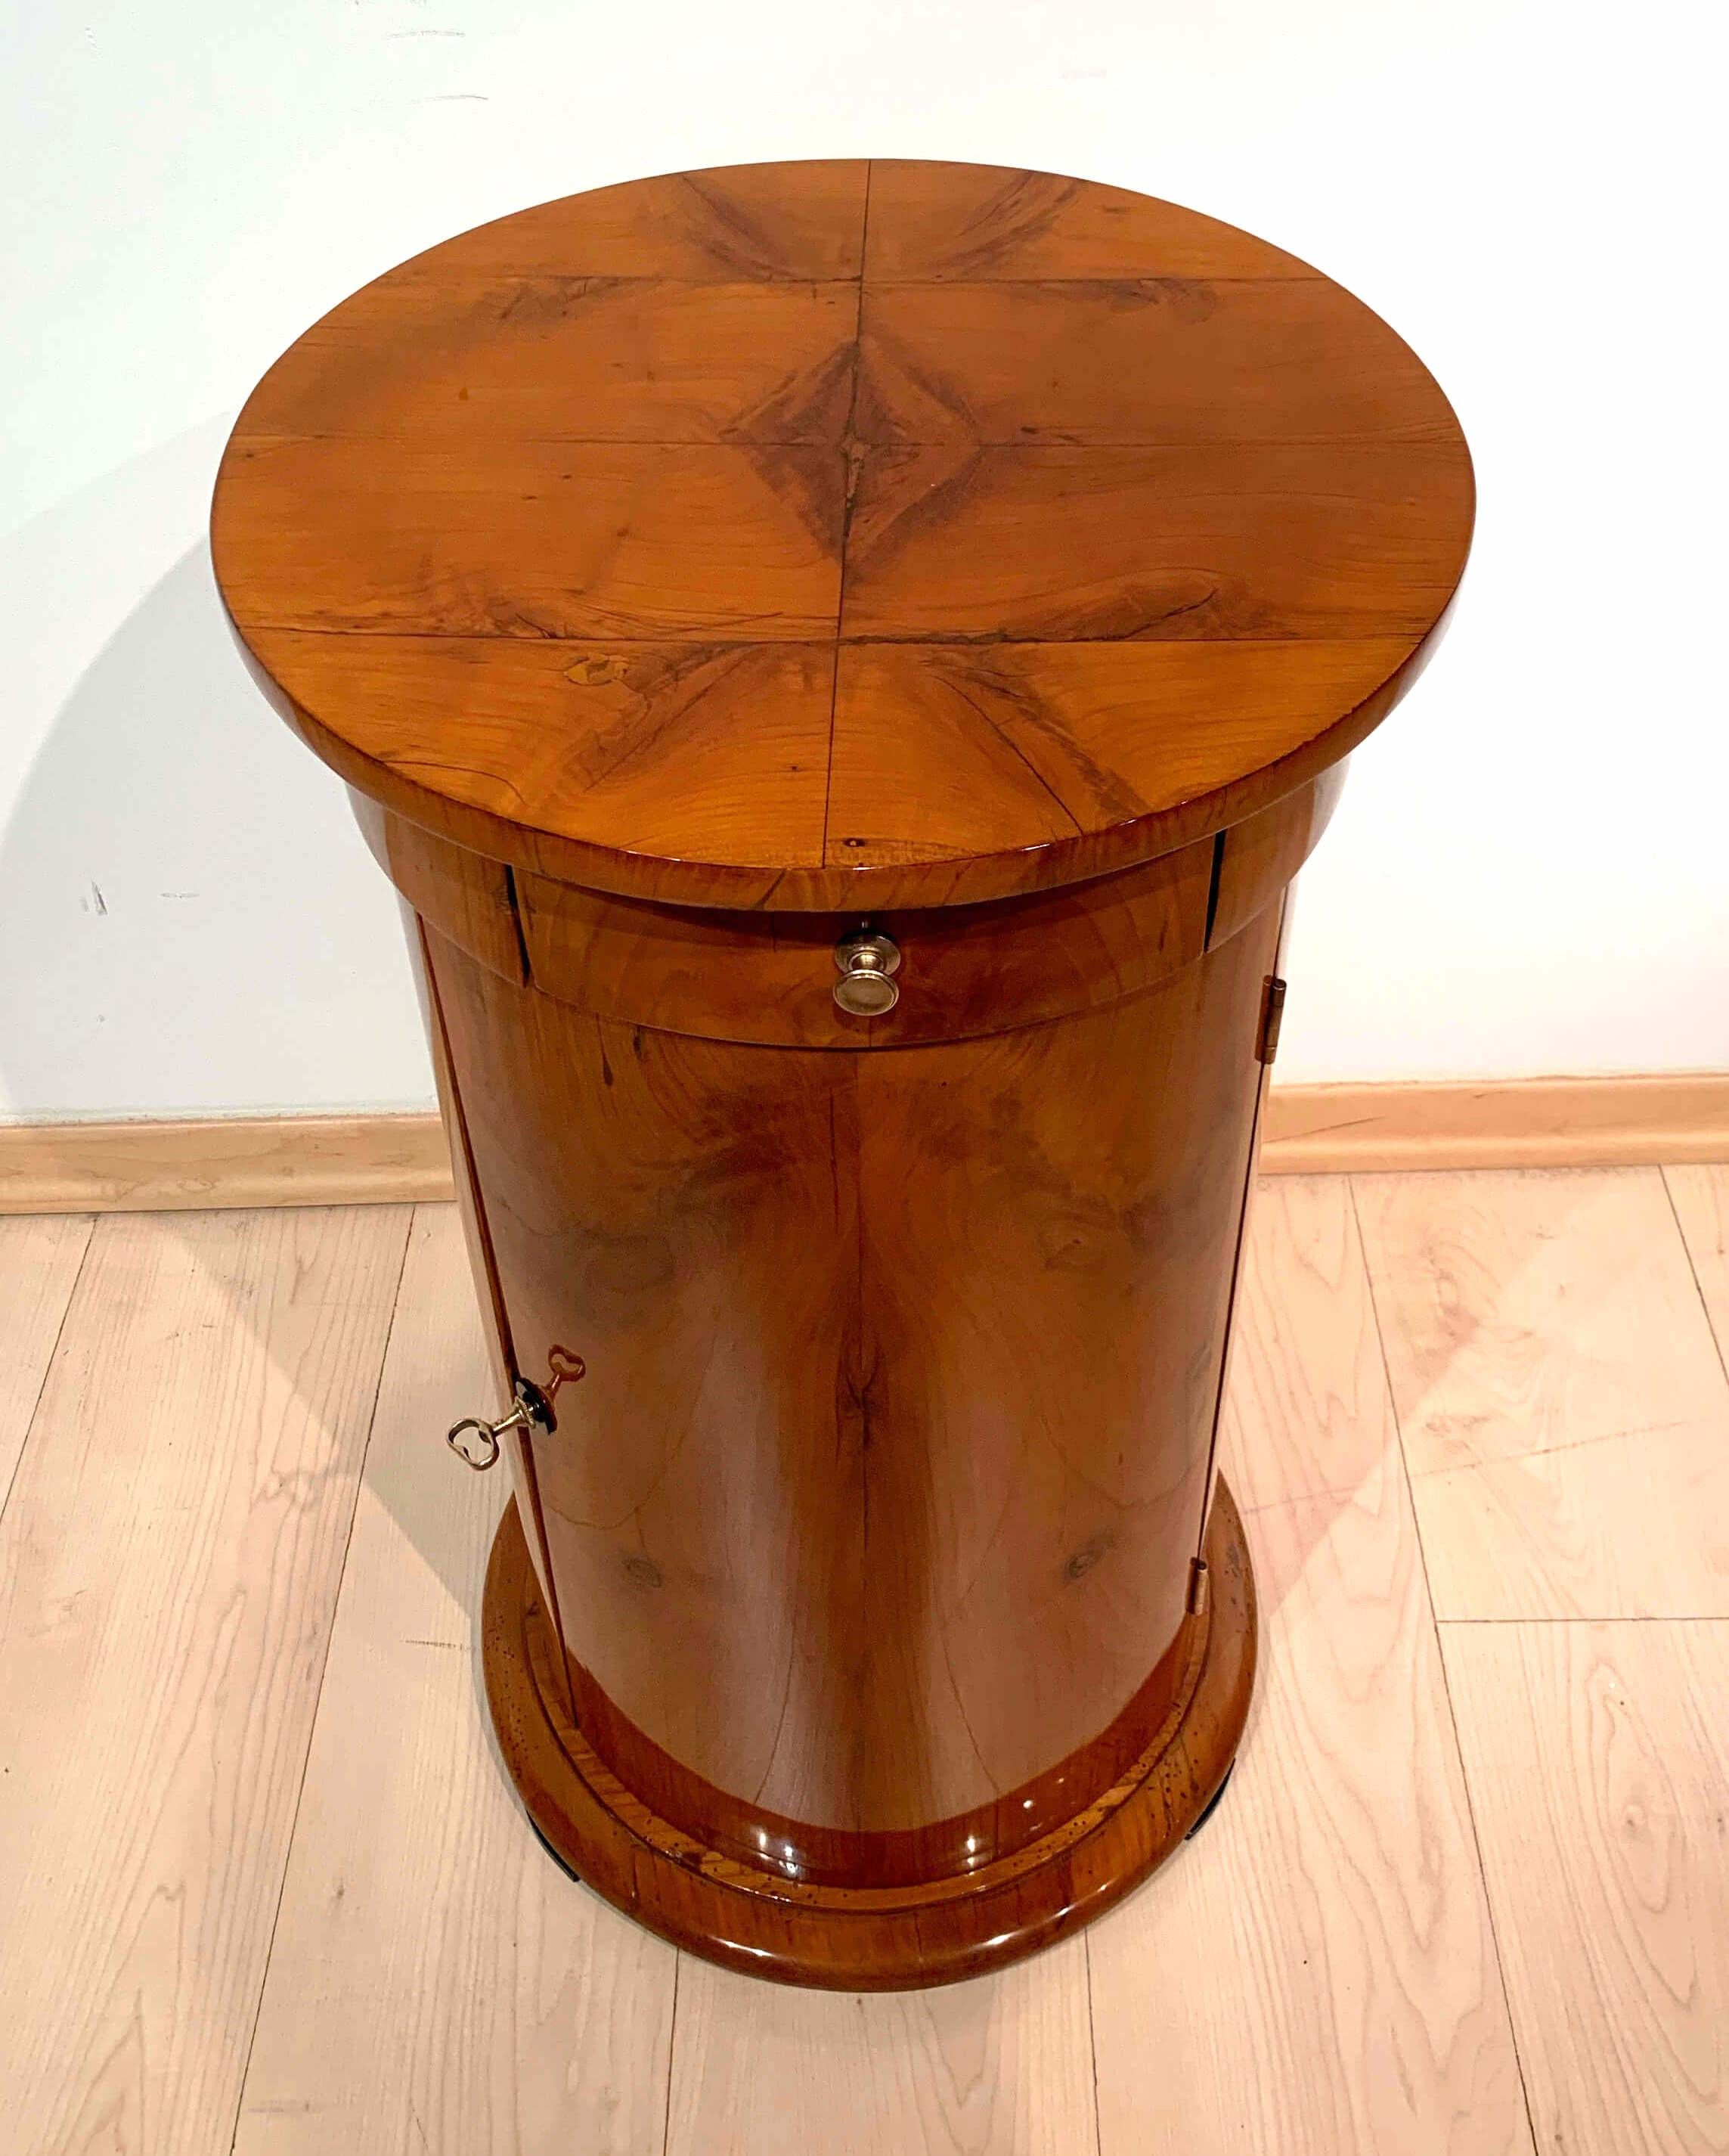 Polished Biedermeier Drum Table, Cherry Veneer, South Germany, circa 1820